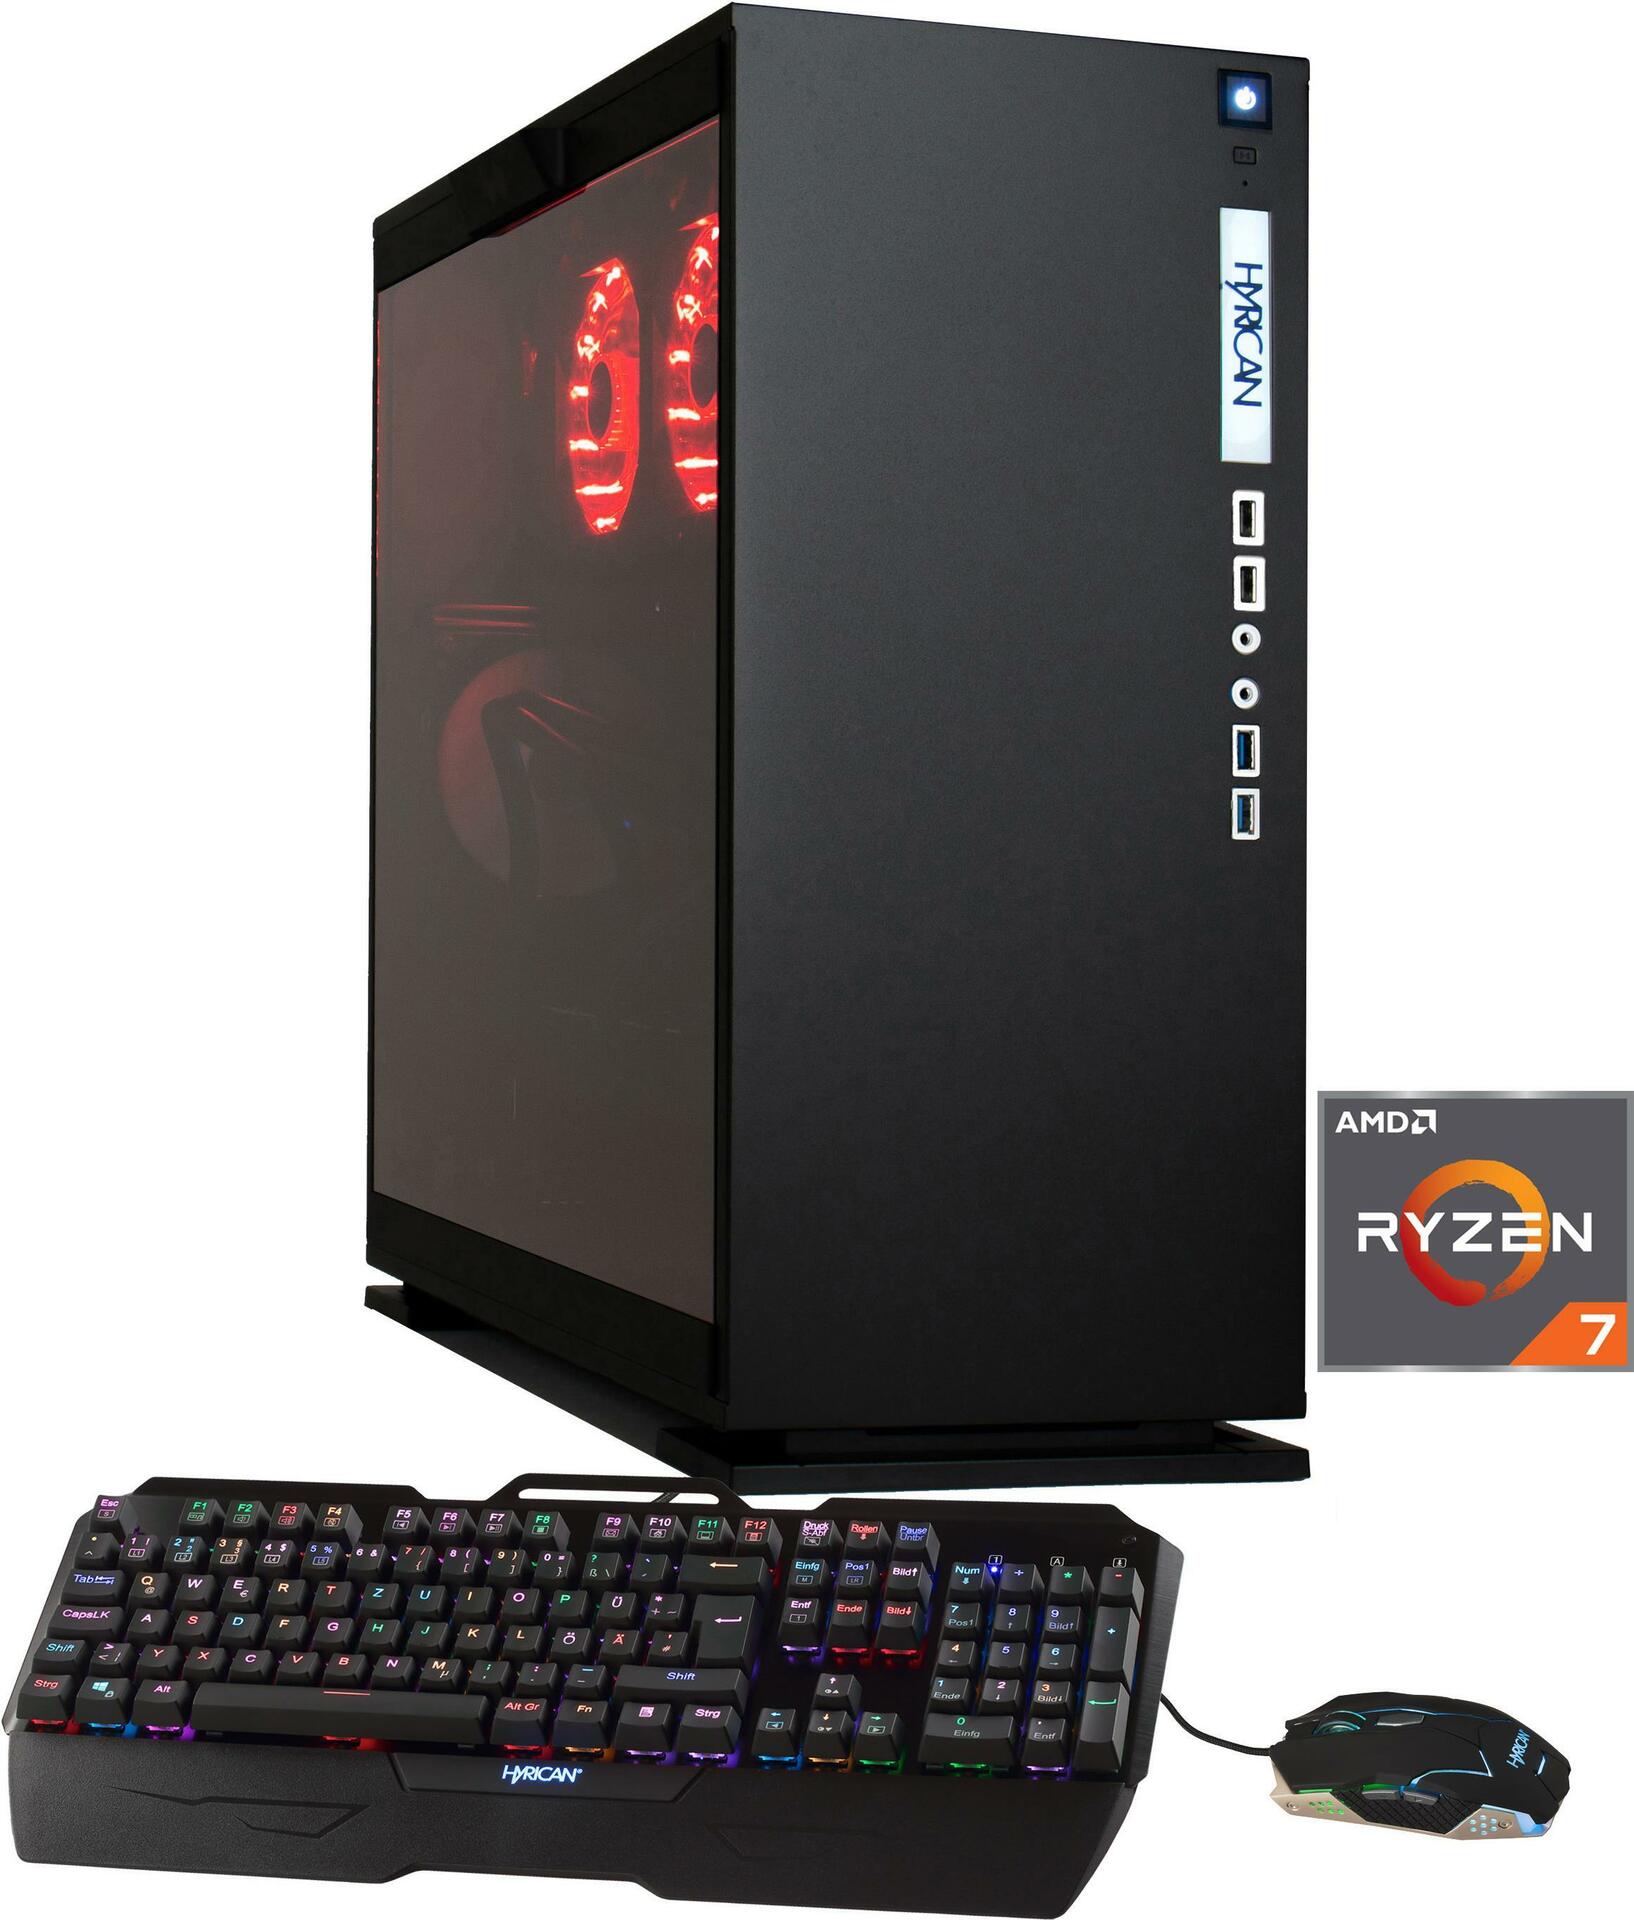 Hyrican Elegance-X PCK06127 Gaming-PC [Ryzen 7 2700X / 16GB RAM / 250GB m.2 SSD / 2TB HDD / RTX 2070 / AMD B450 / W10] (PCK06127)